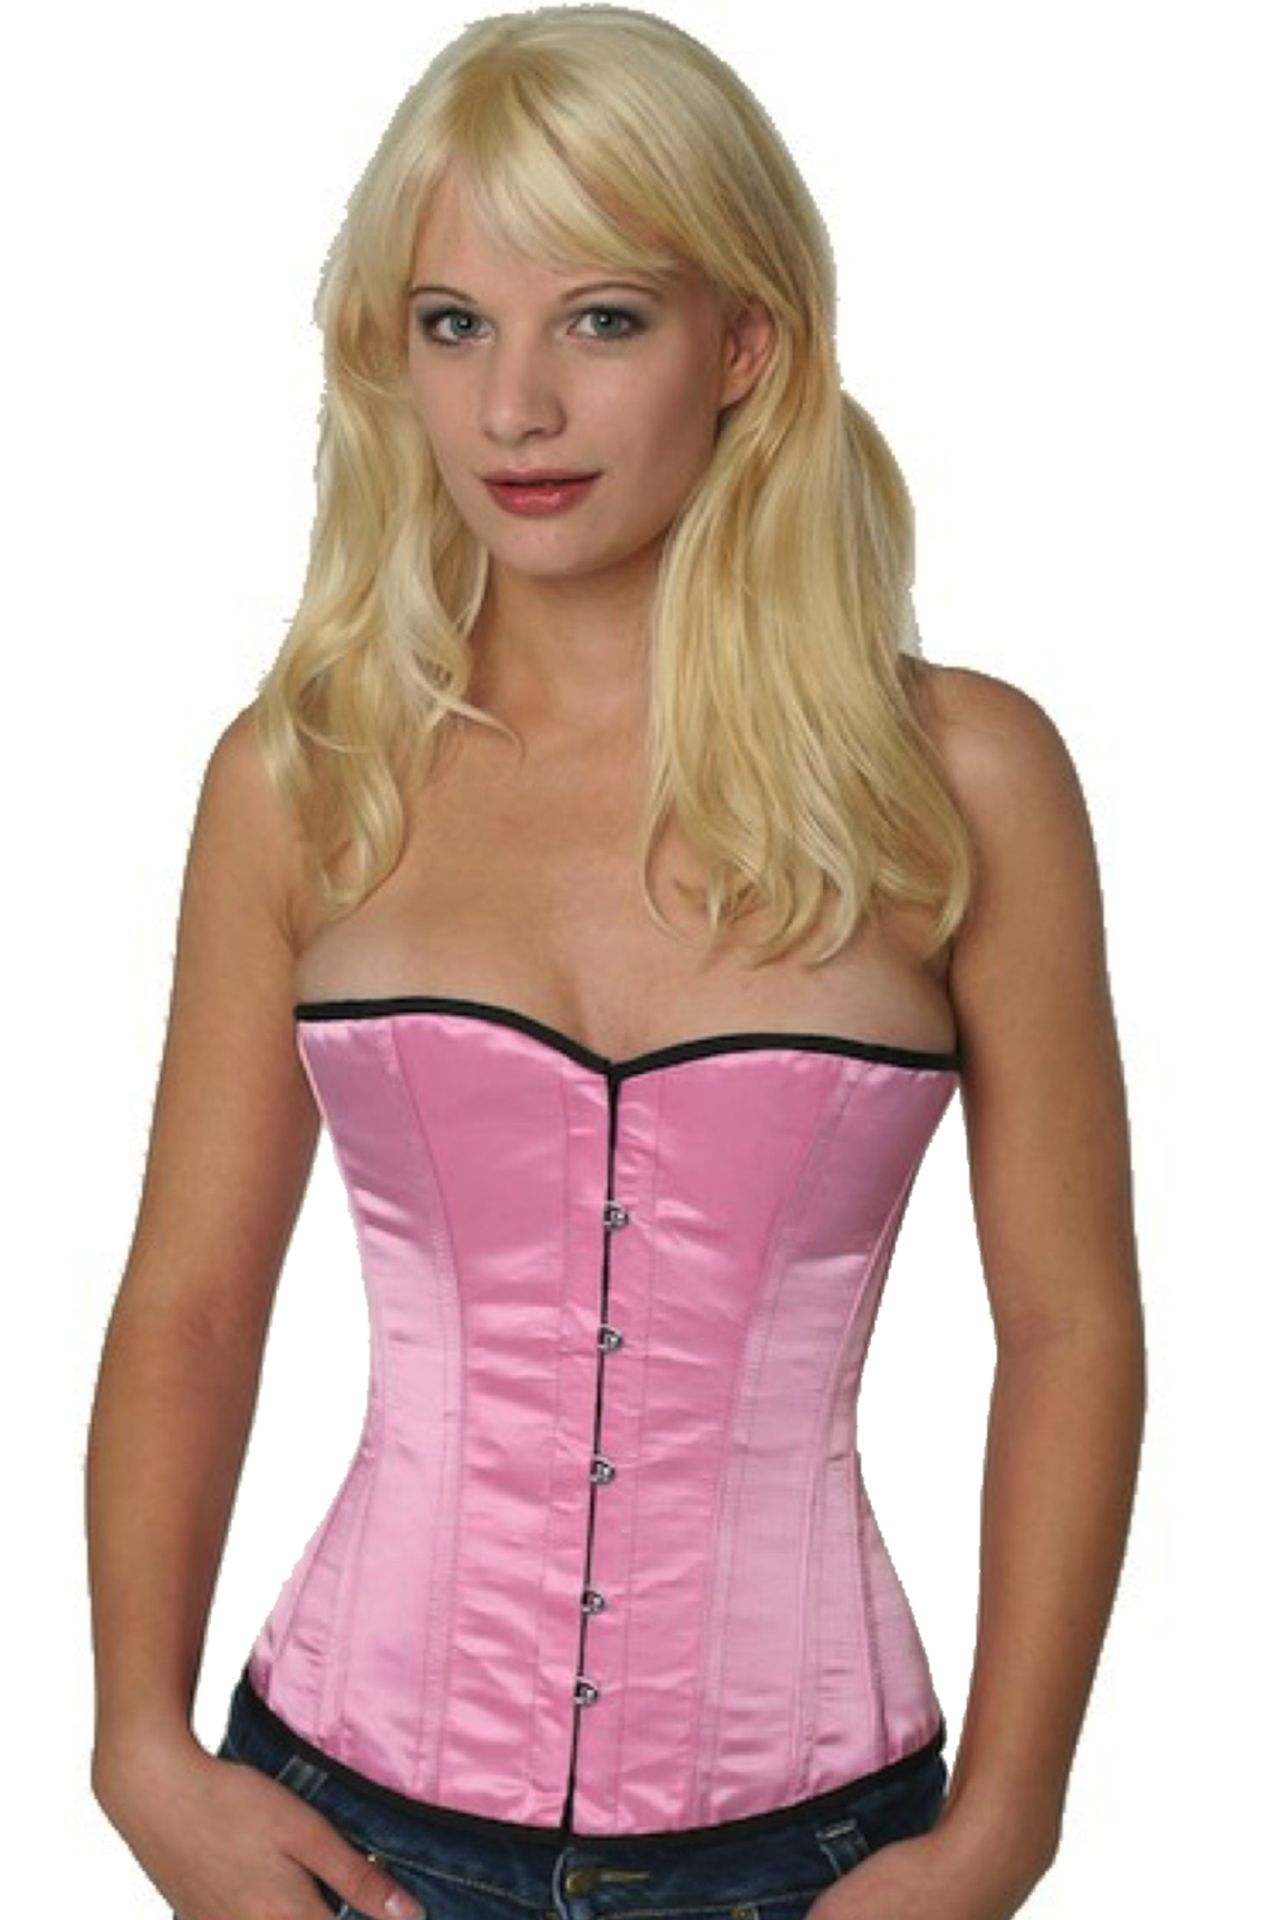 Corse rosa raso medio pecho corset sh03